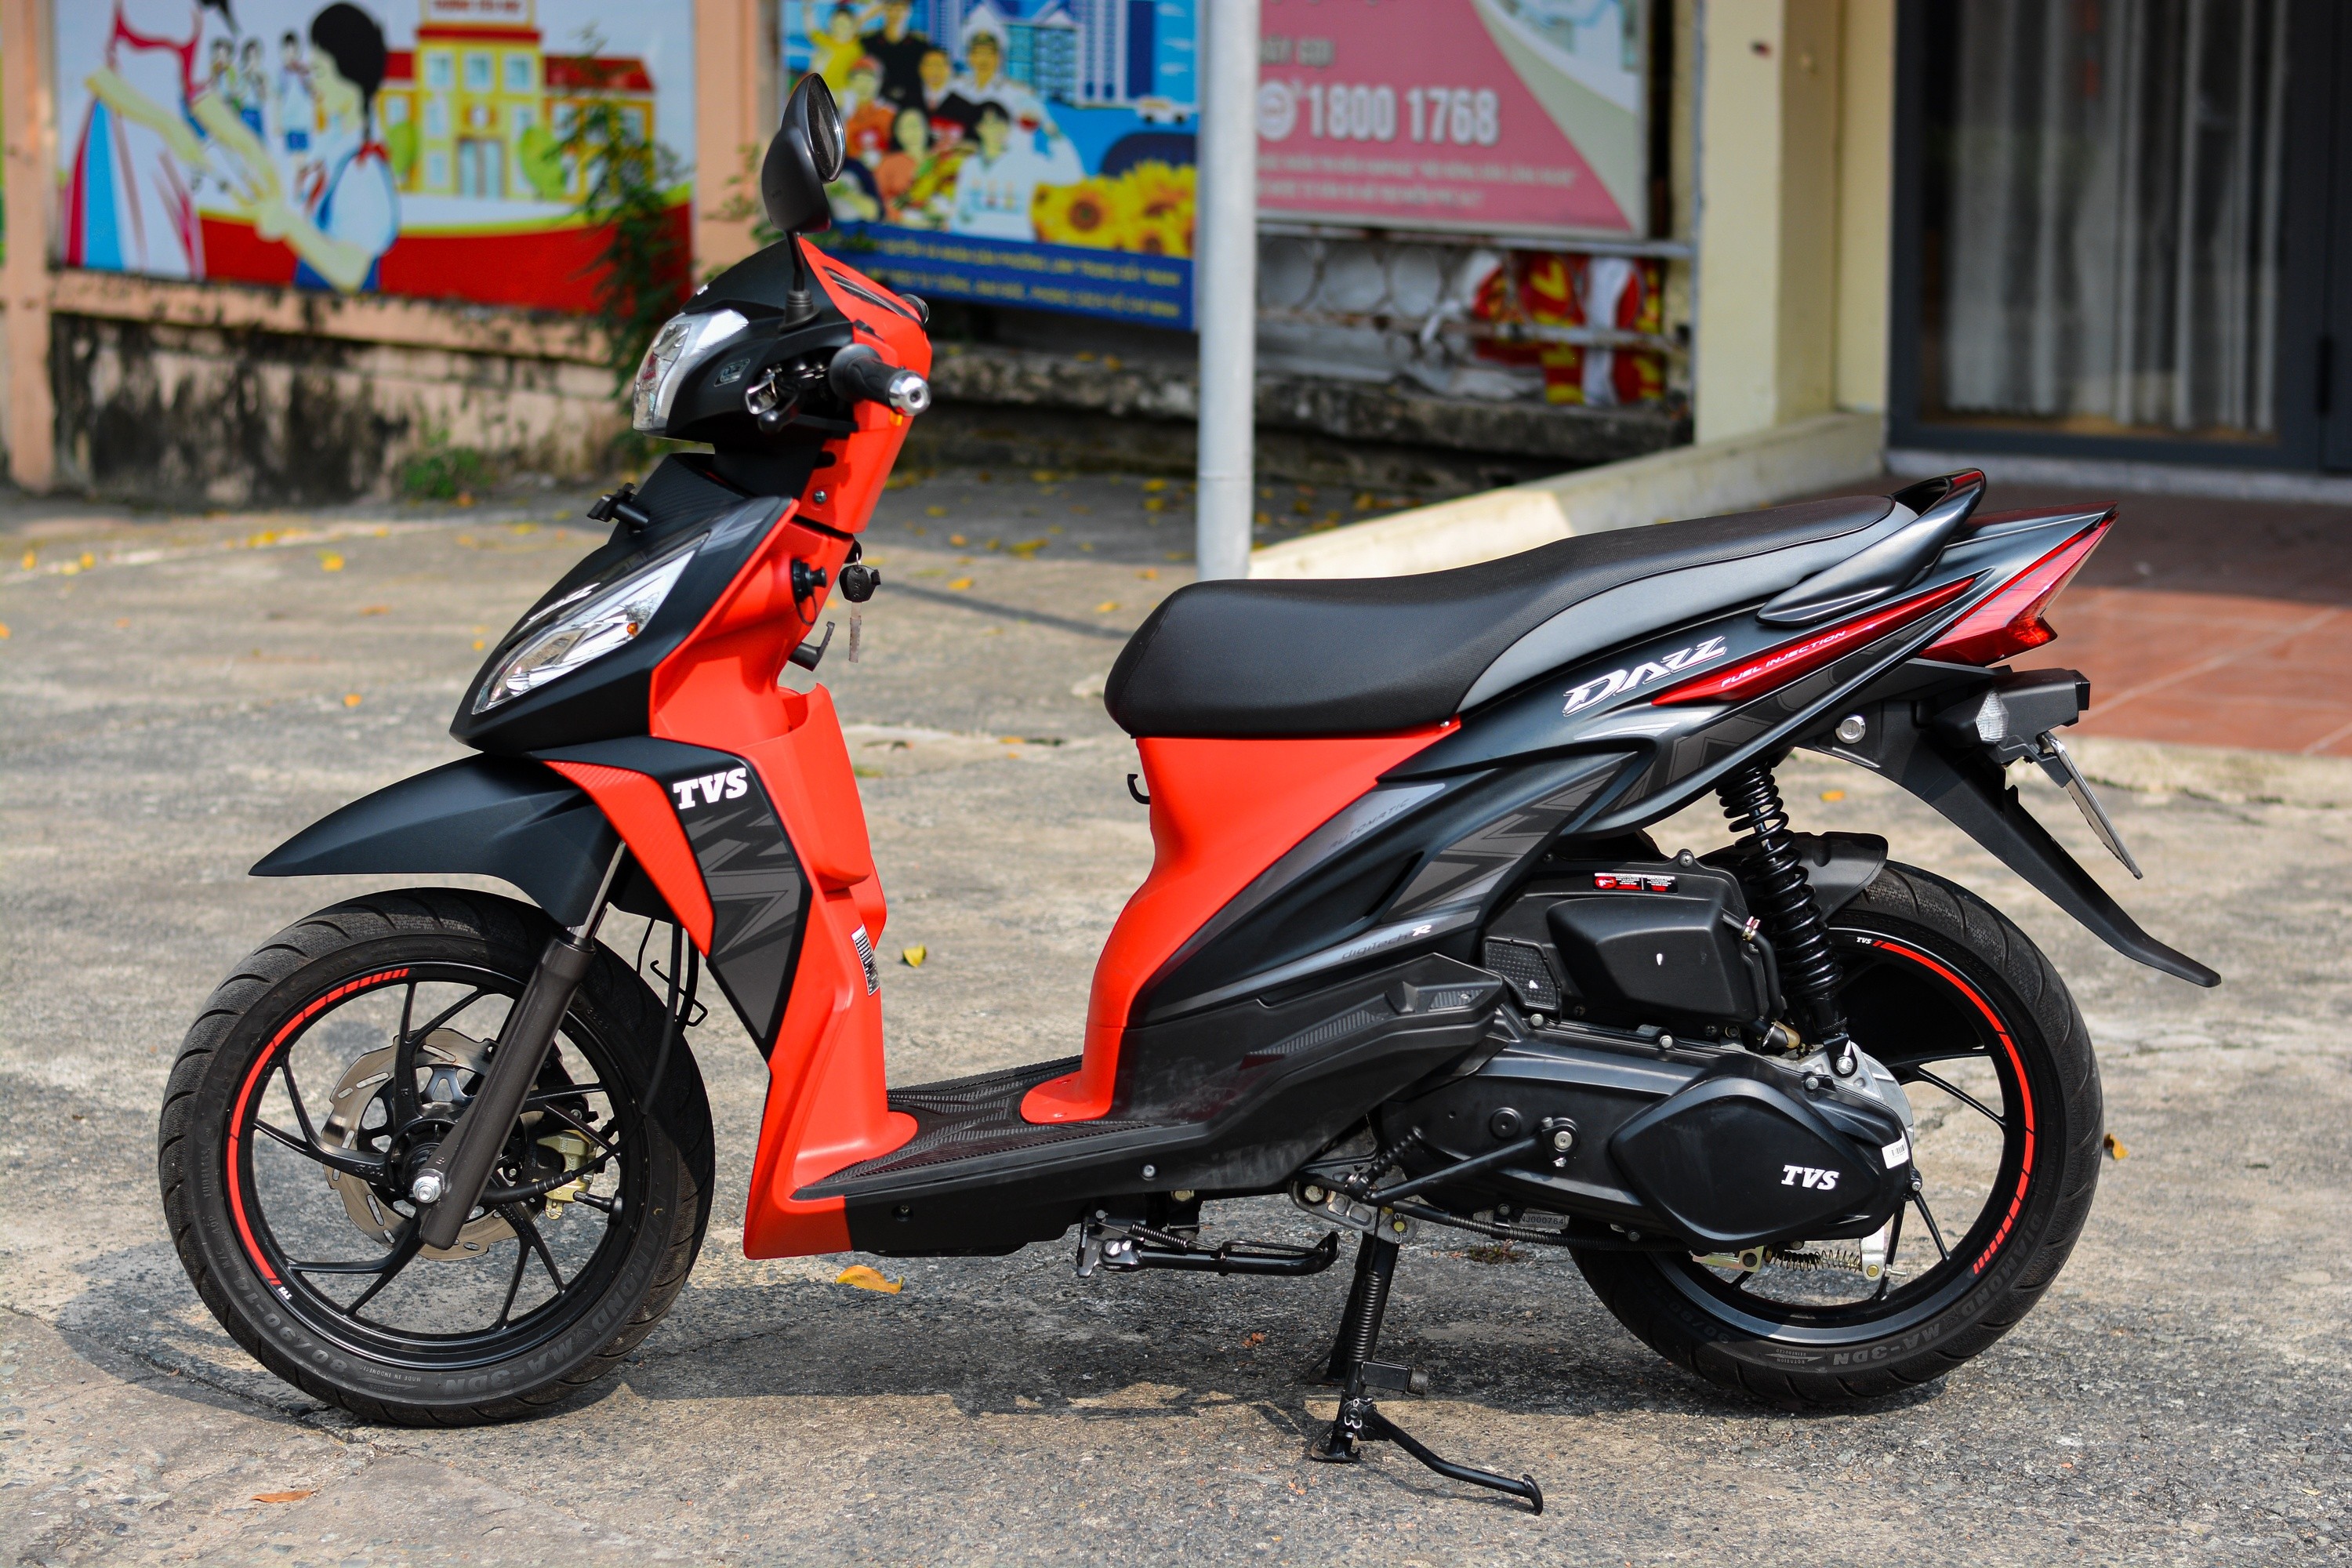 Chi tiết mẫu xe ga 110cc rẻ nhất thị trường Việt Nam: Thể thao hơn Honda Vision, giá 25,9 triệu đồng ảnh 5